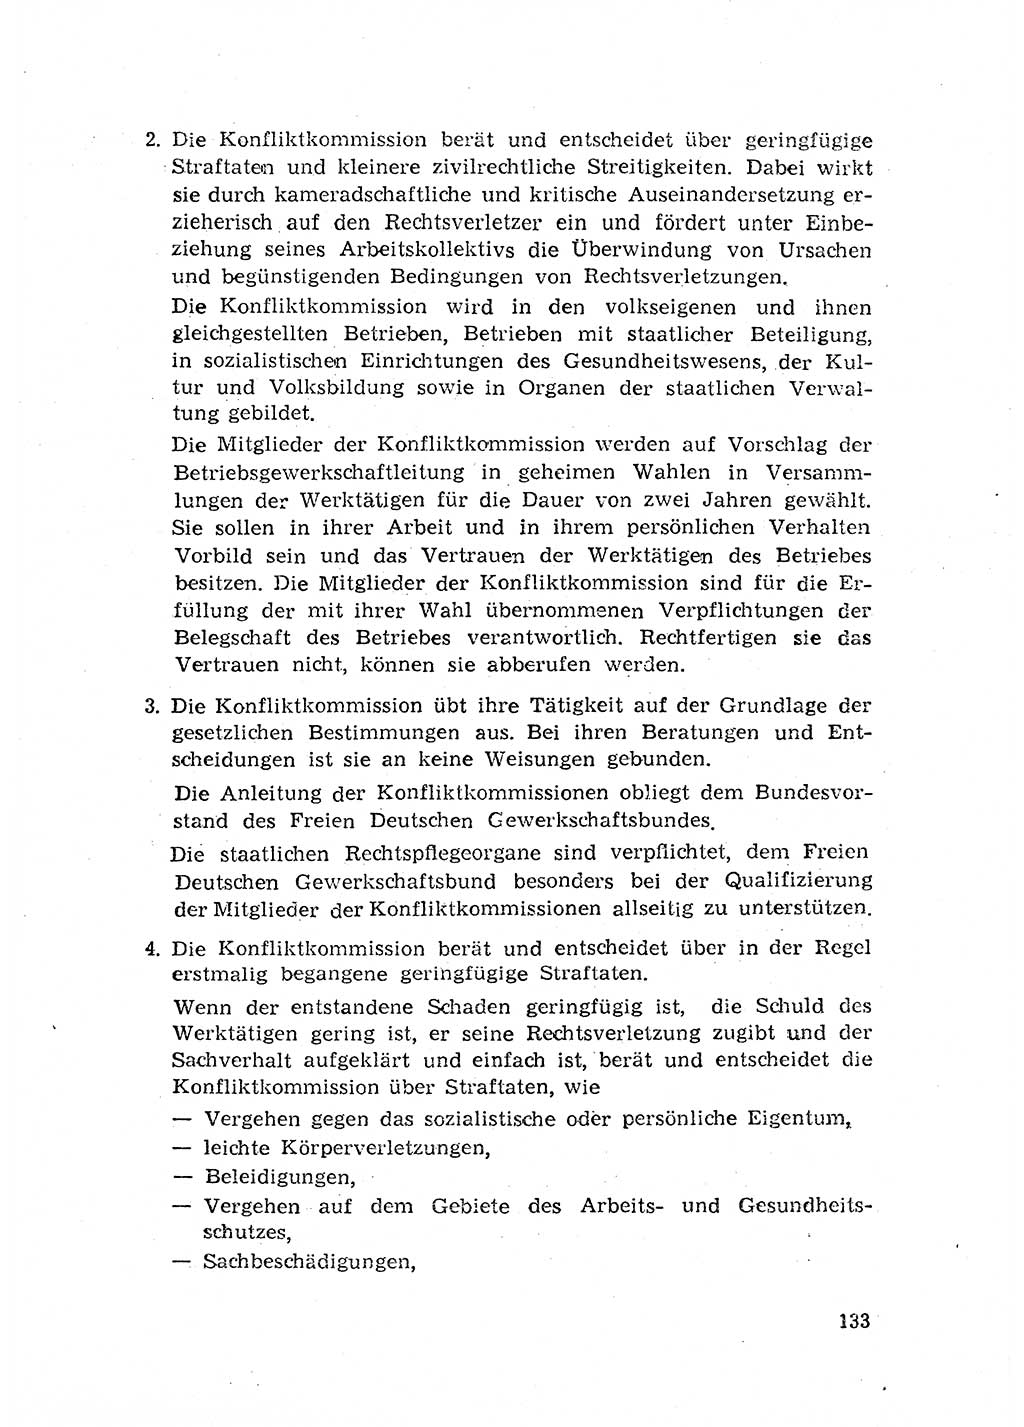 Rechtspflegeerlaß [Deutsche Demokratische Republik (DDR)] 1963, Seite 133 (R.-Pfl.-Erl. DDR 1963, S. 133)